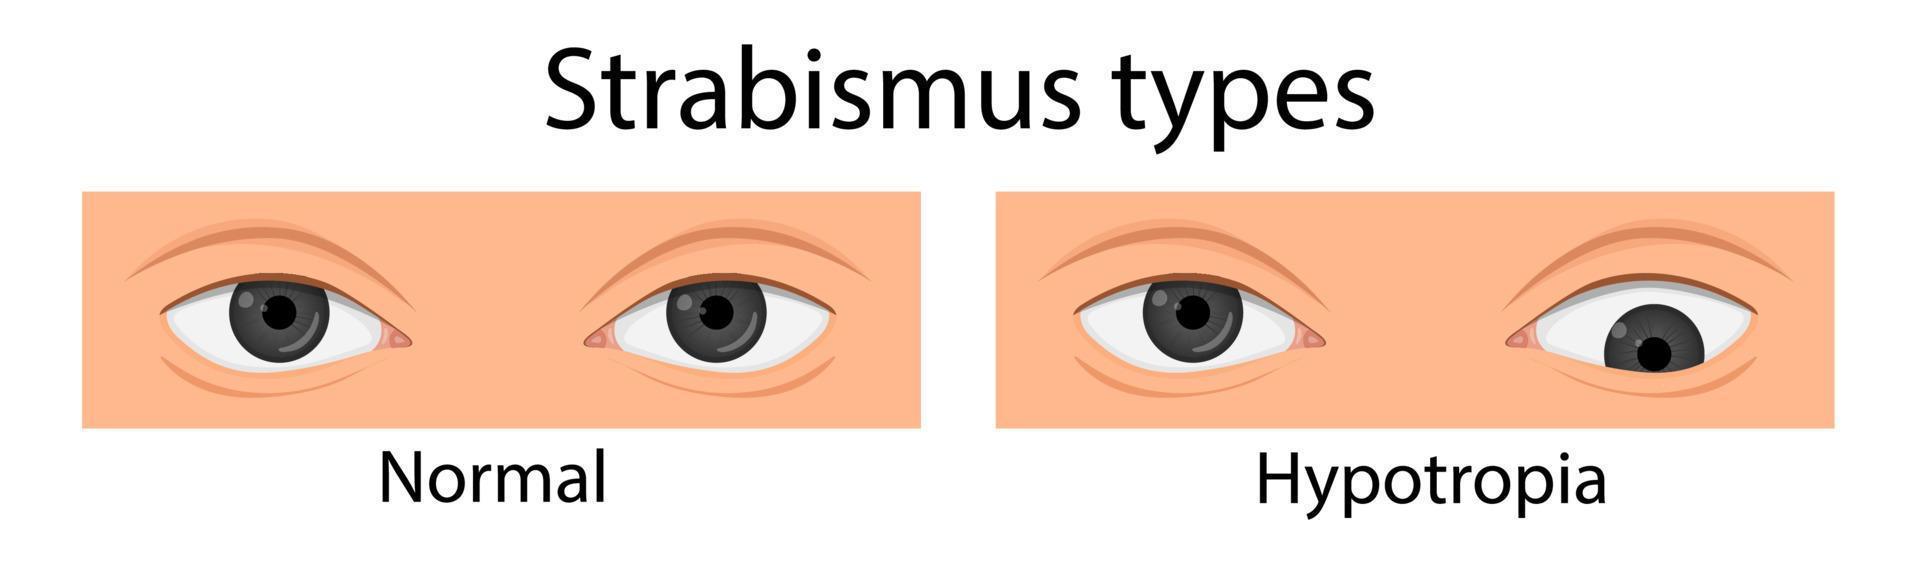 Types of strabismus. Hypotropia, hypertropia, esotropia. cartoon style vector